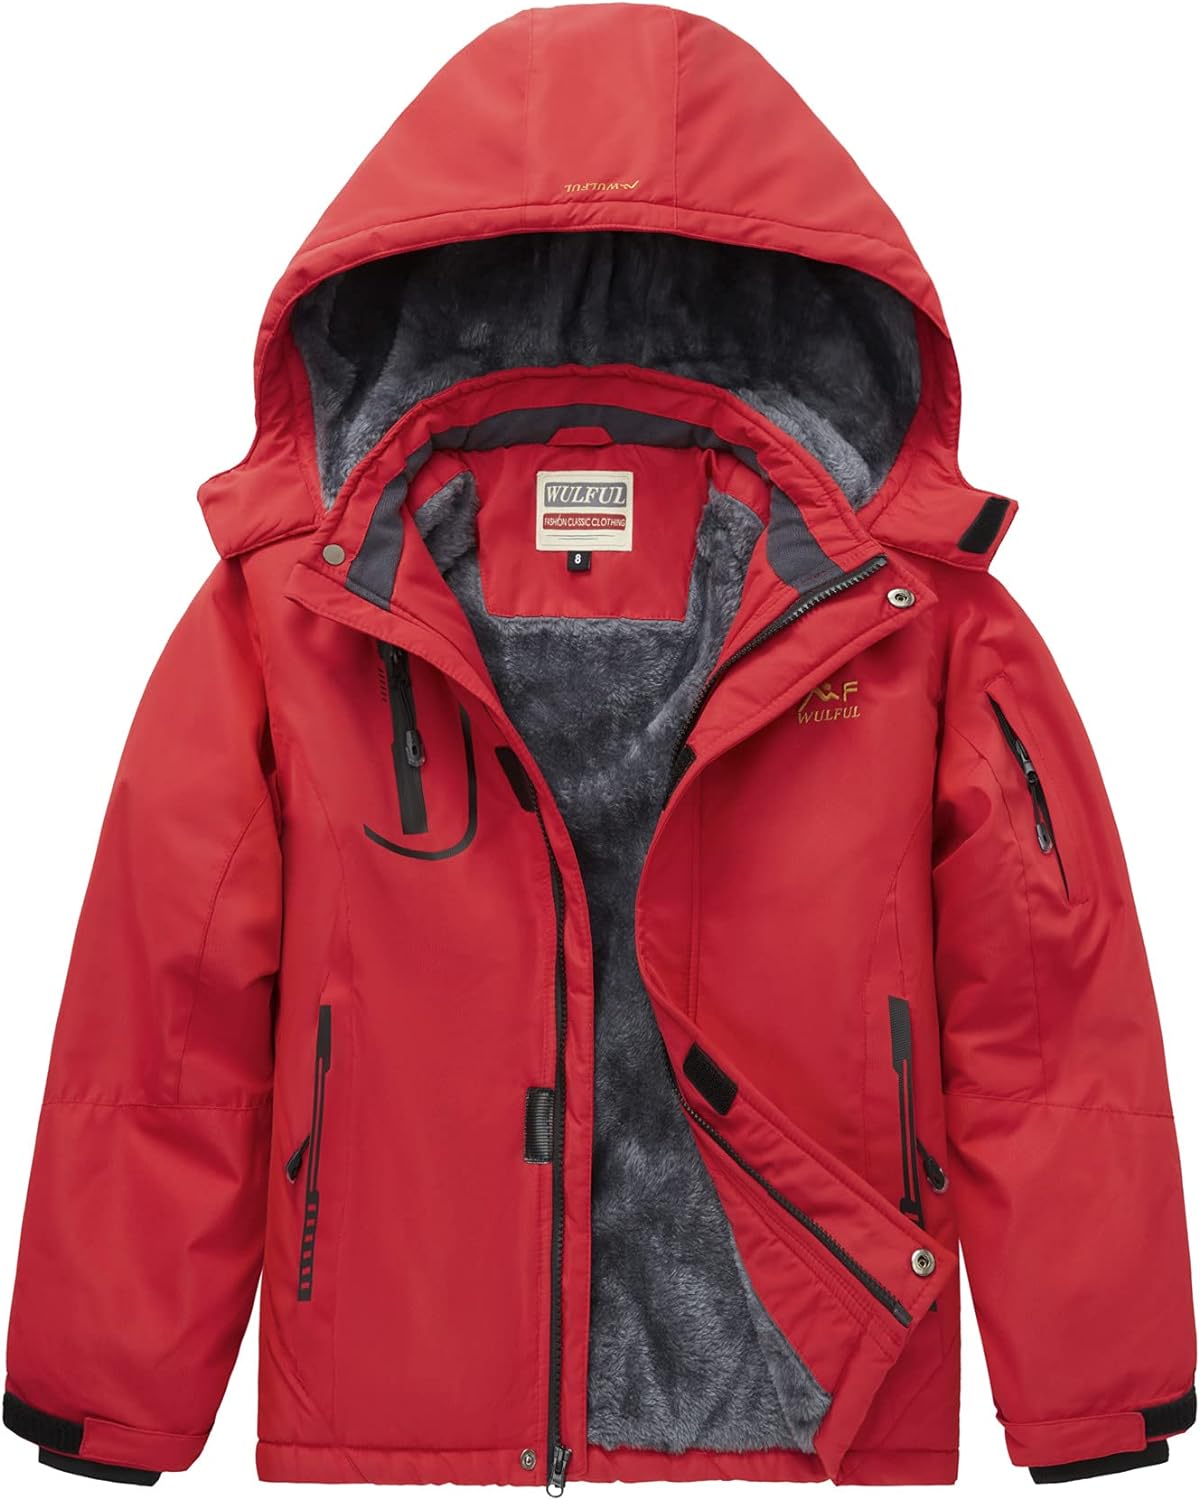 WULFUL Boy's Waterproof Ski Jacket Warm Fleece Hooded Winter Snow Coat